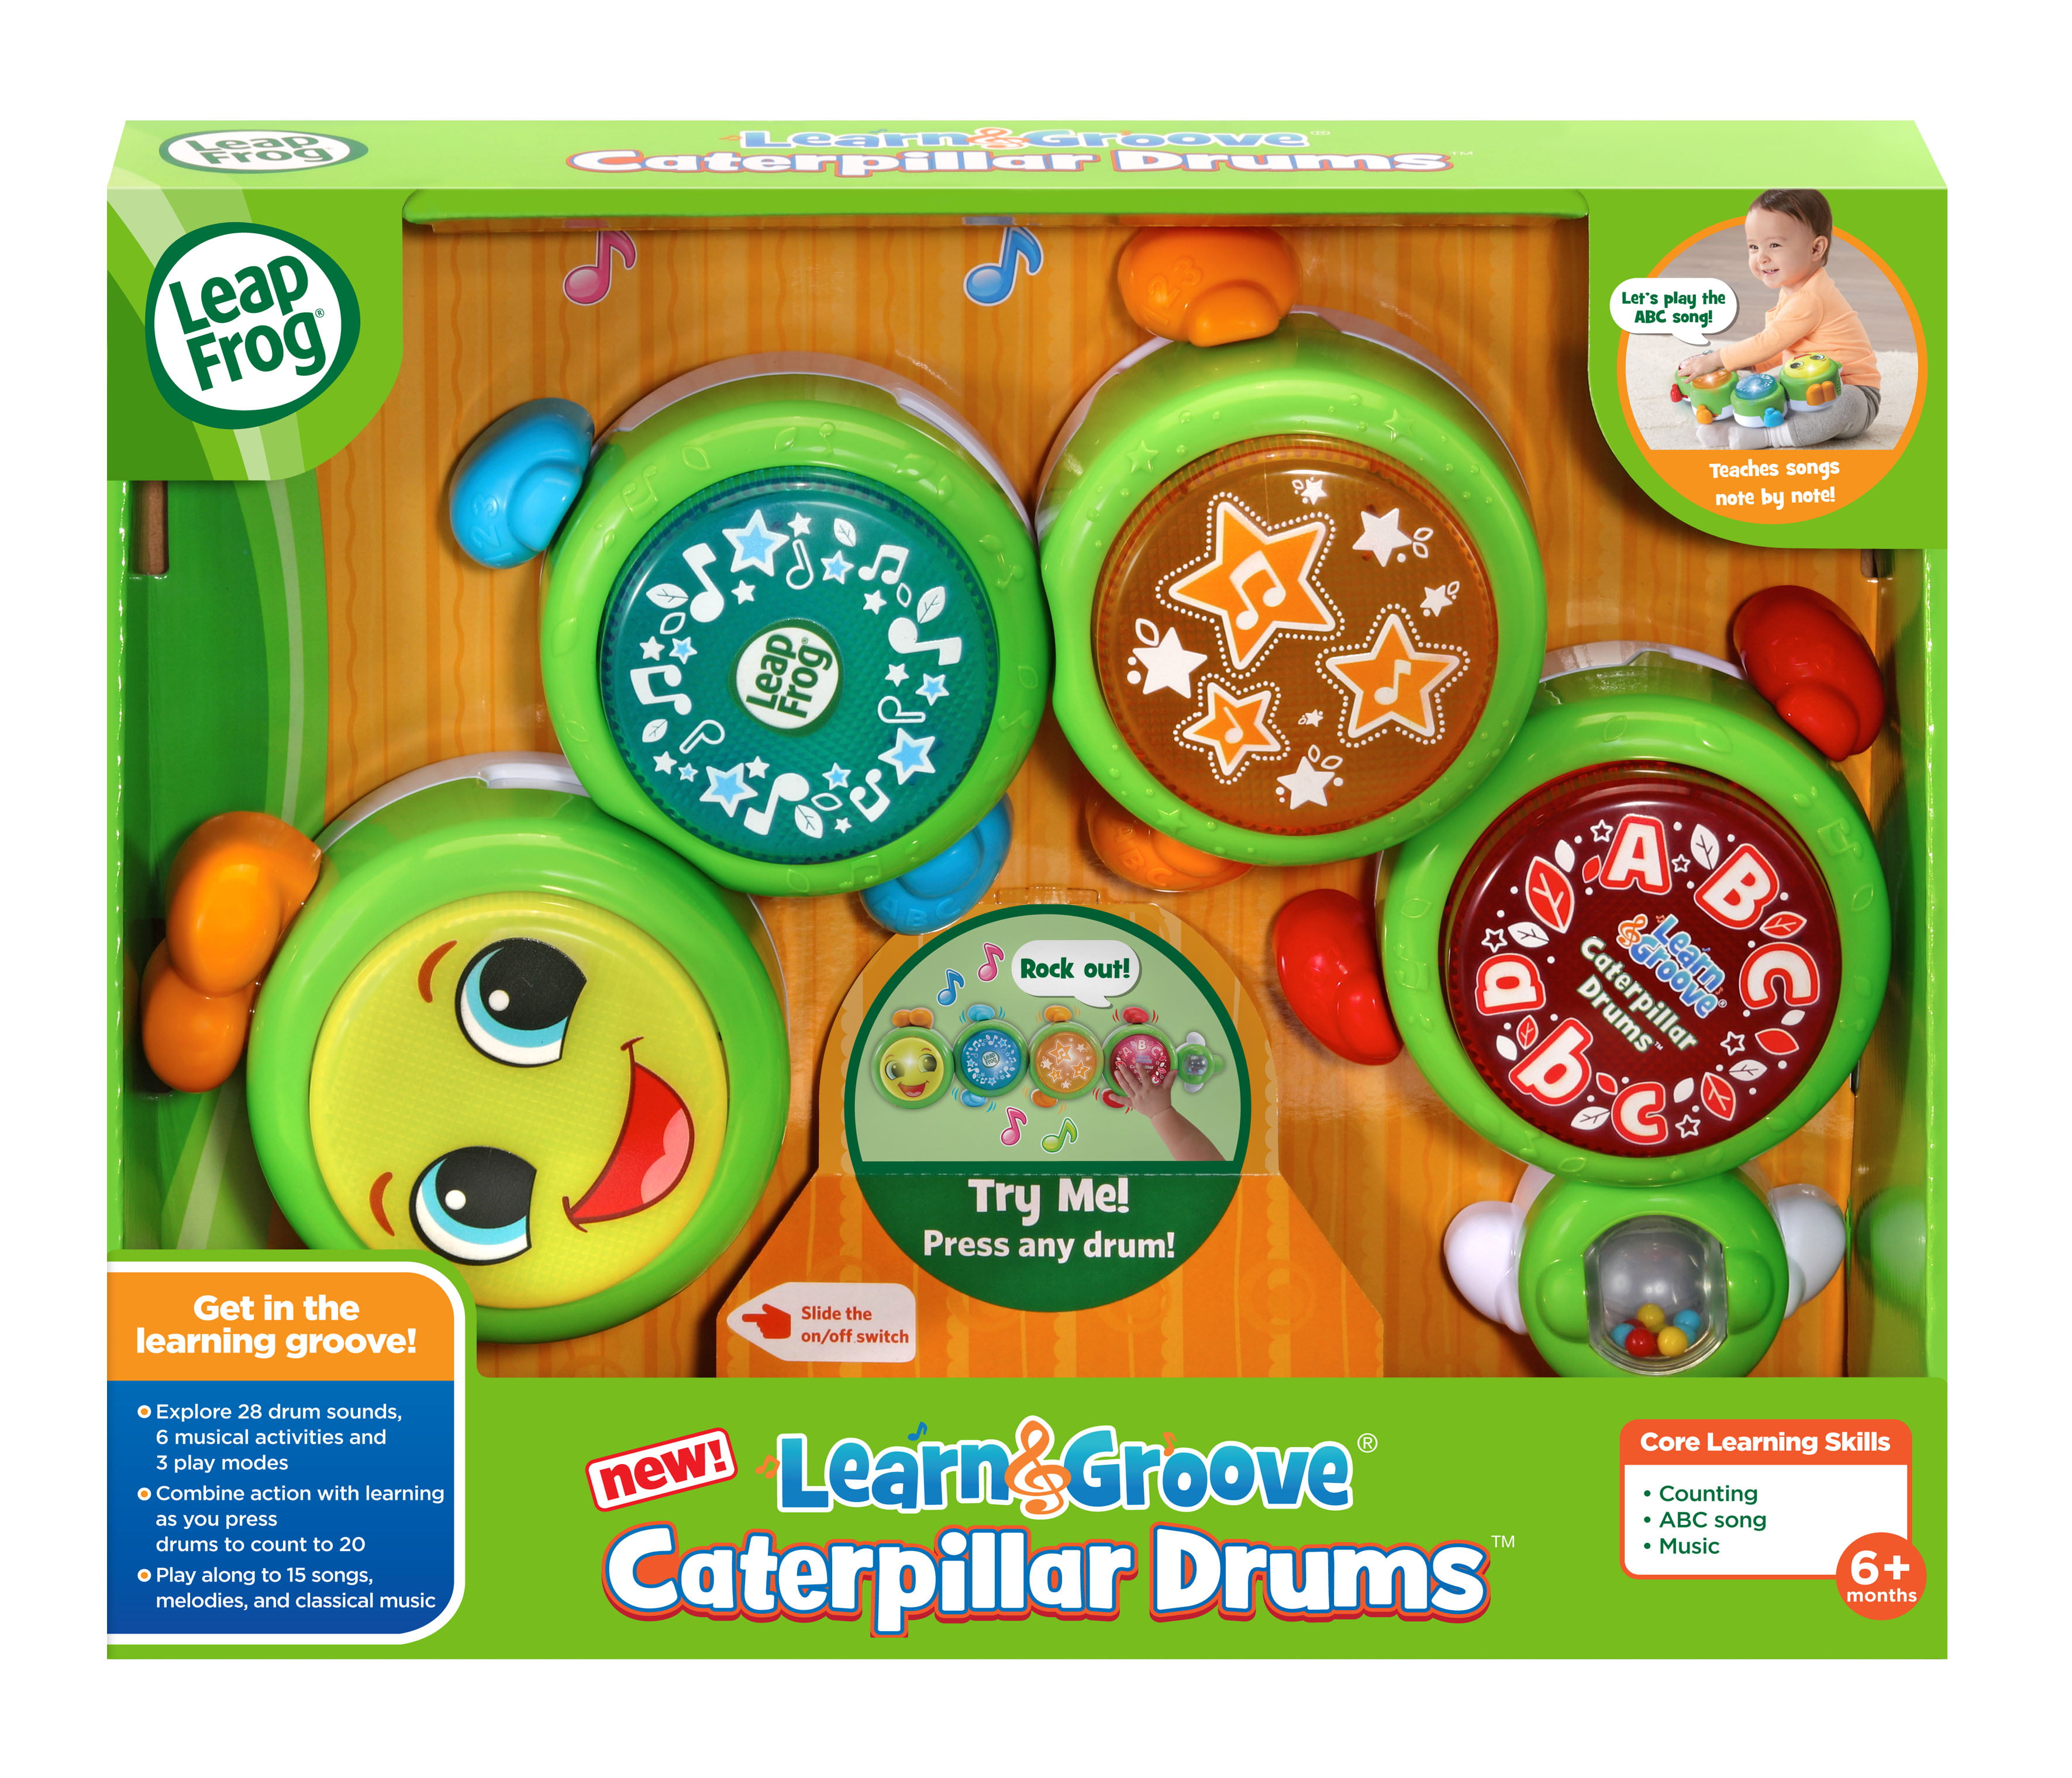 leapfrog learn & groove alphabet drum